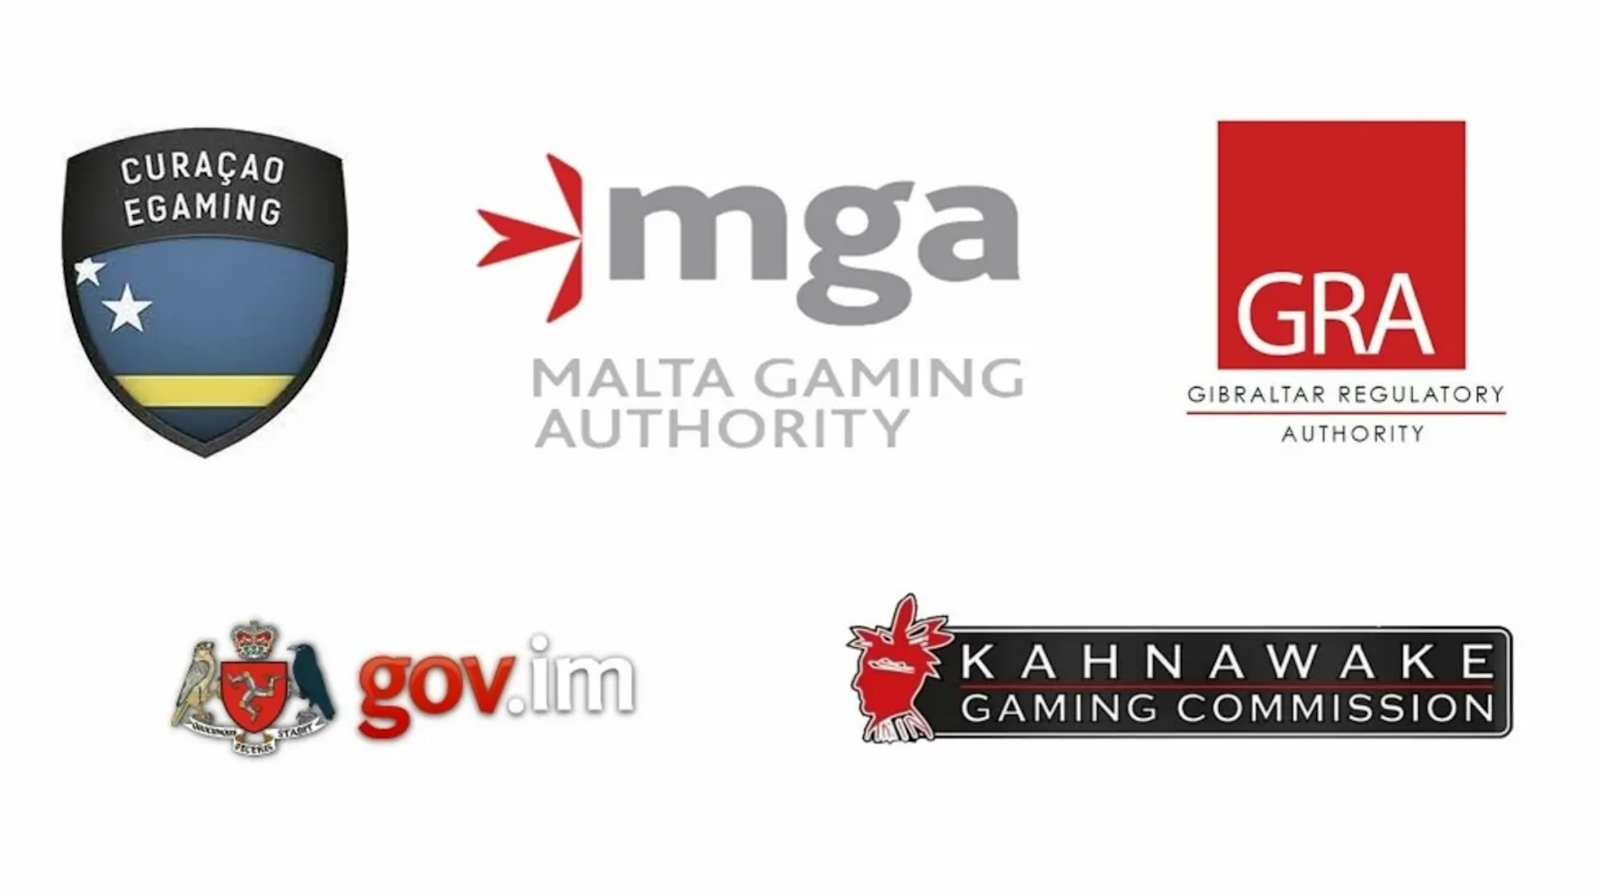 Wie viel verlangen Sie für Online Casinos für Österreich